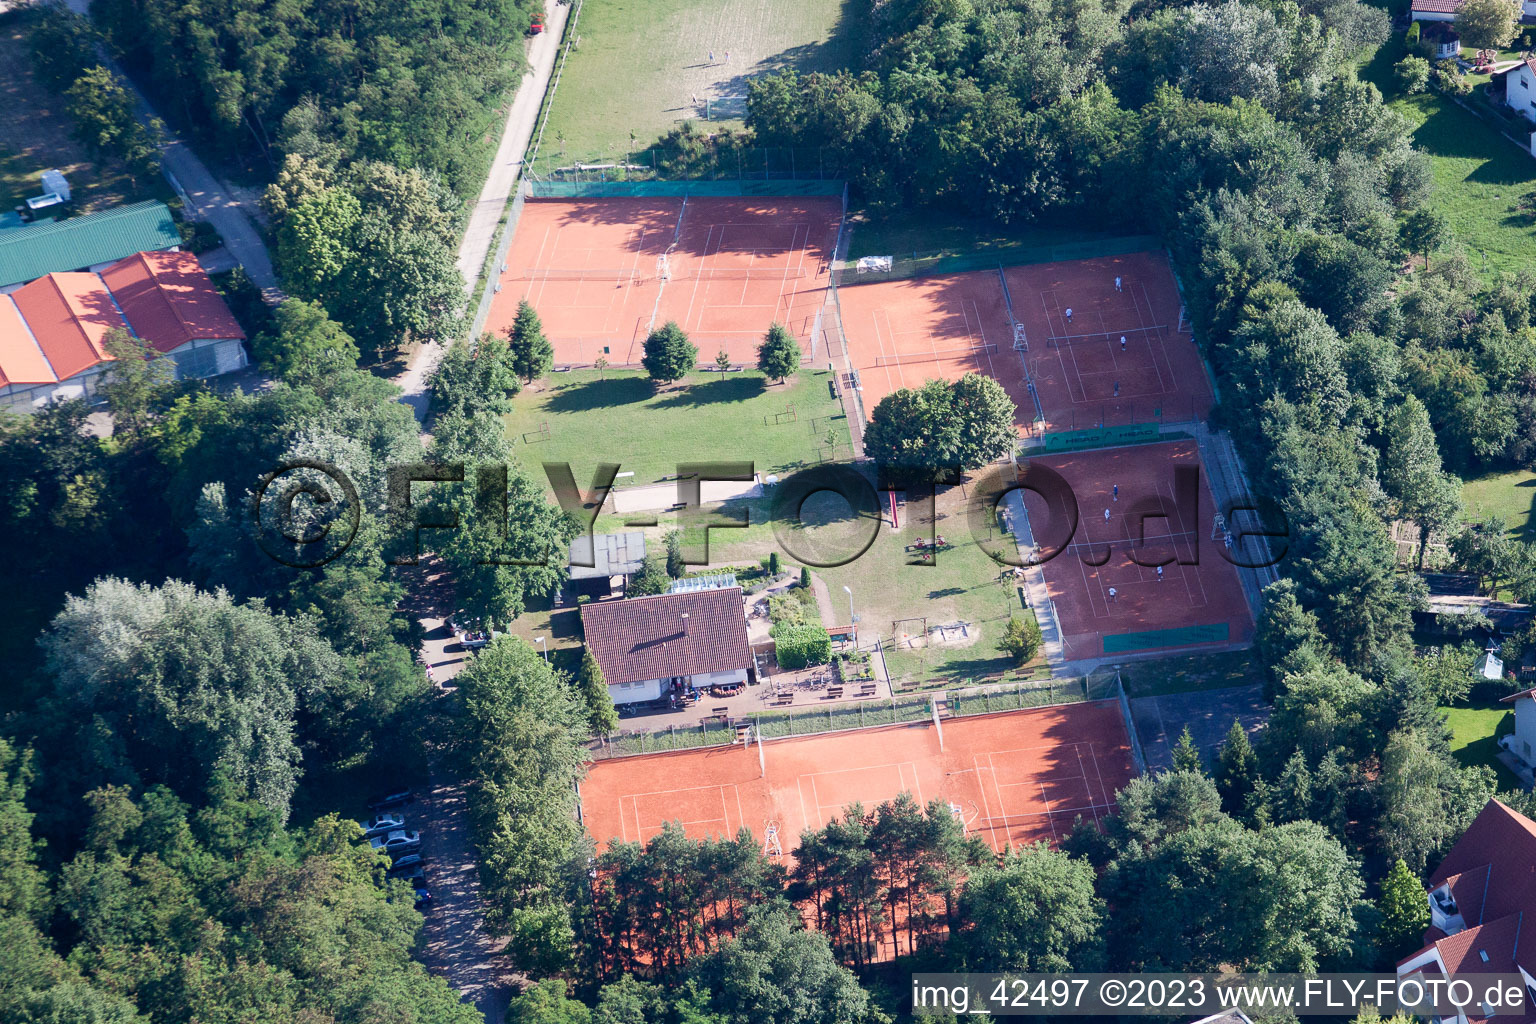 Luftbild von Jockgrim, Tennis im Bundesland Rheinland-Pfalz, Deutschland